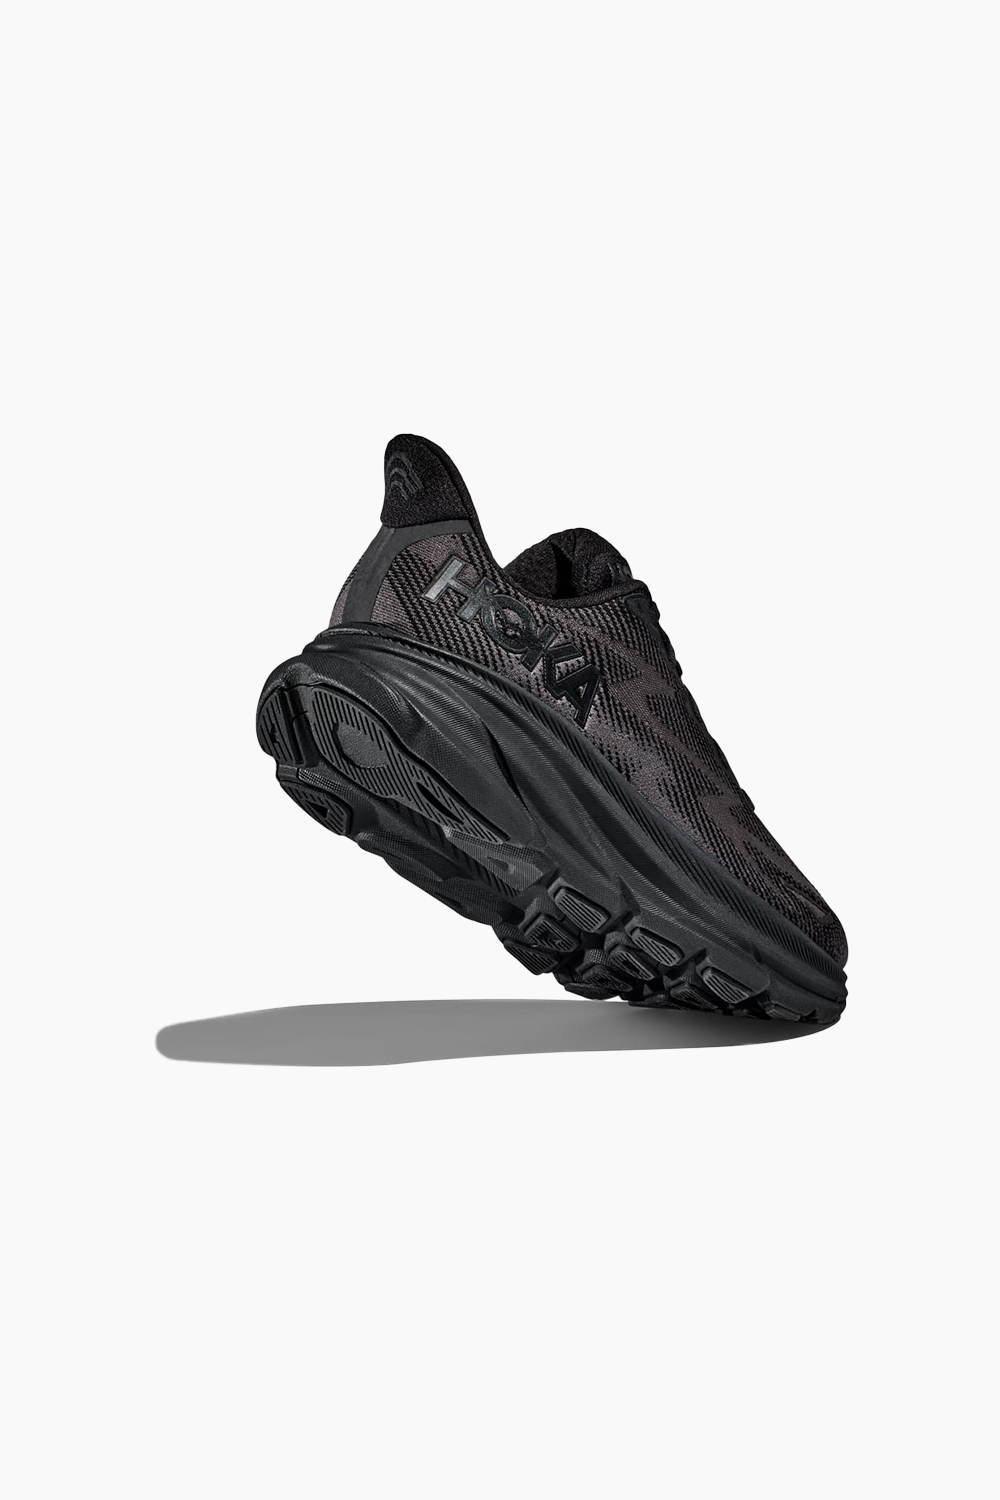 Hoka Men's Clifton 9 Sneaker in Black/Black